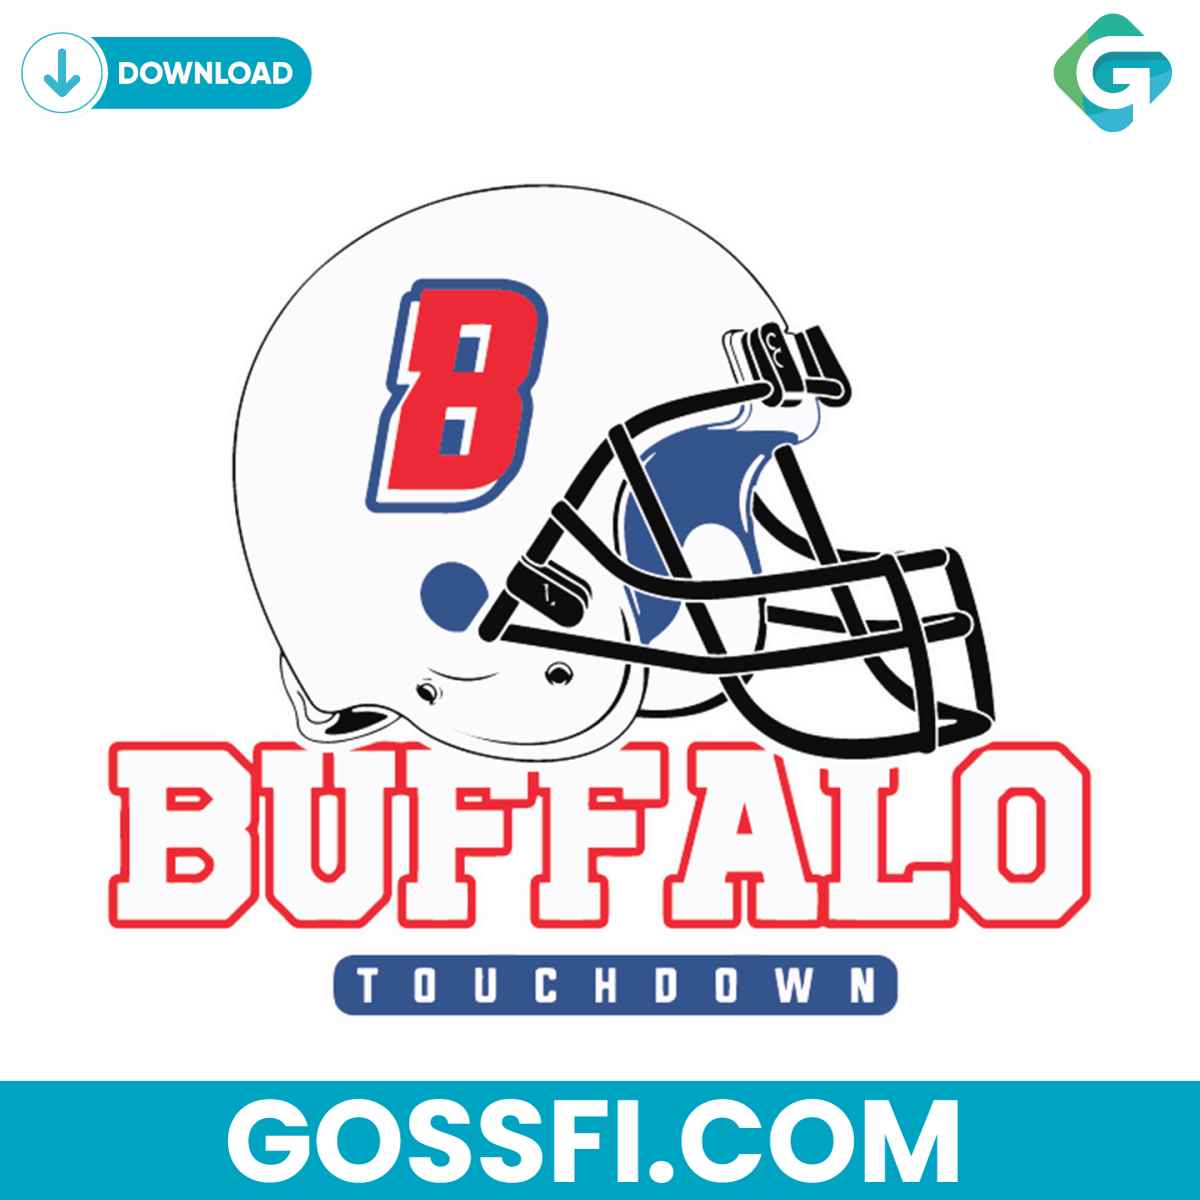 buffalo-touchdown-helmet-svg-digital-download